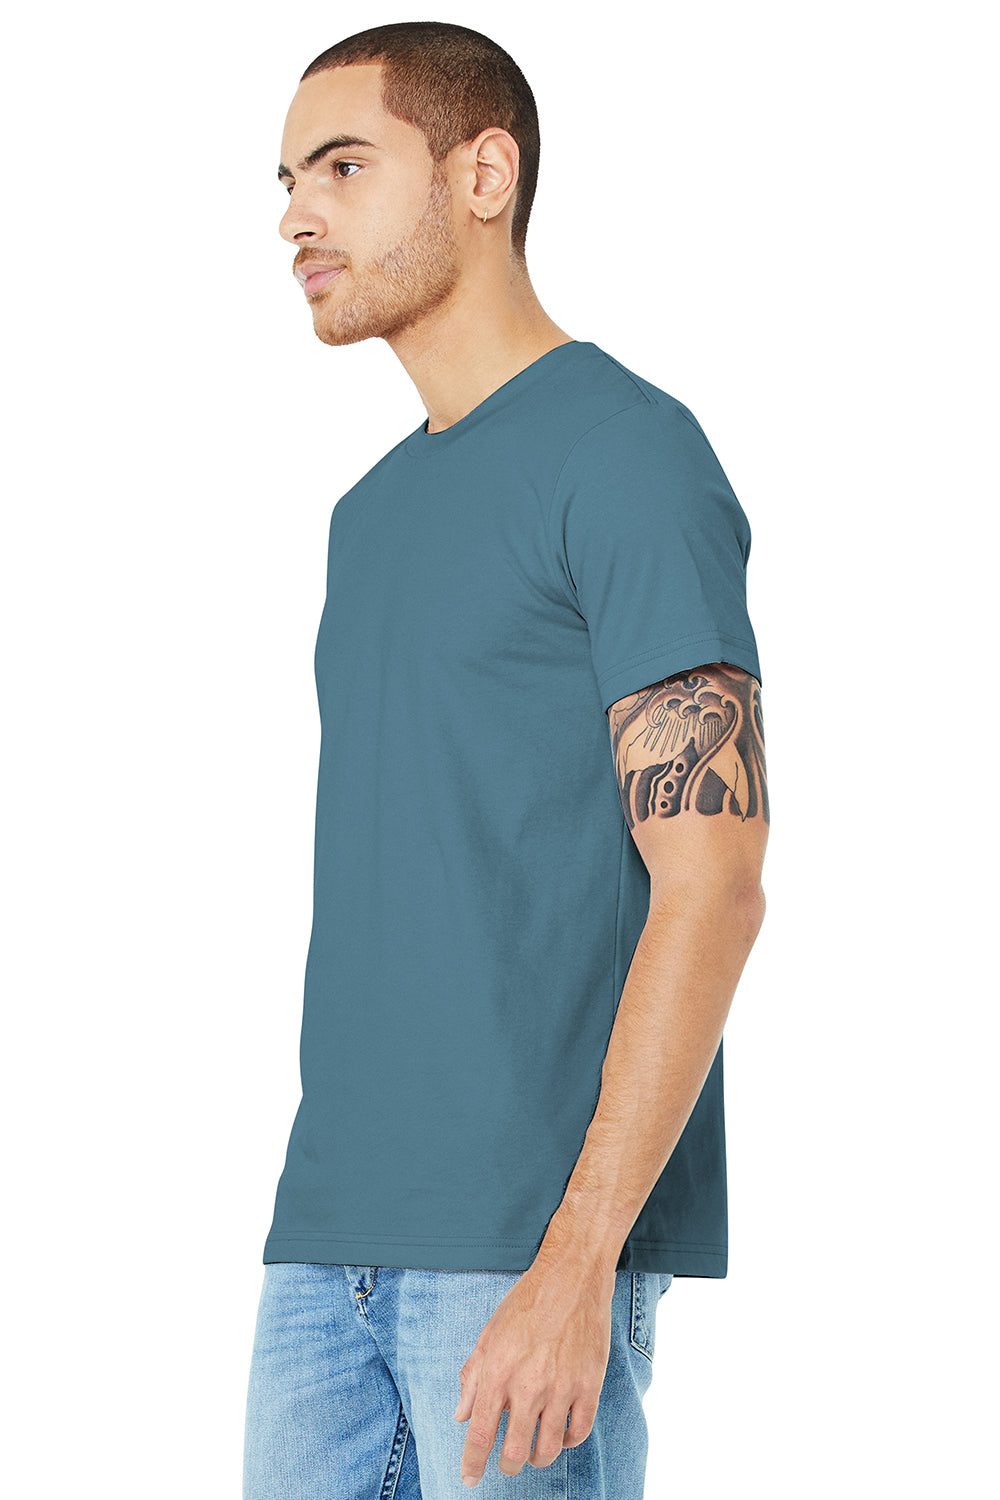 Bella + Canvas BC3001/3001C Mens Jersey Short Sleeve Crewneck T-Shirt Steel Blue Model 3Q